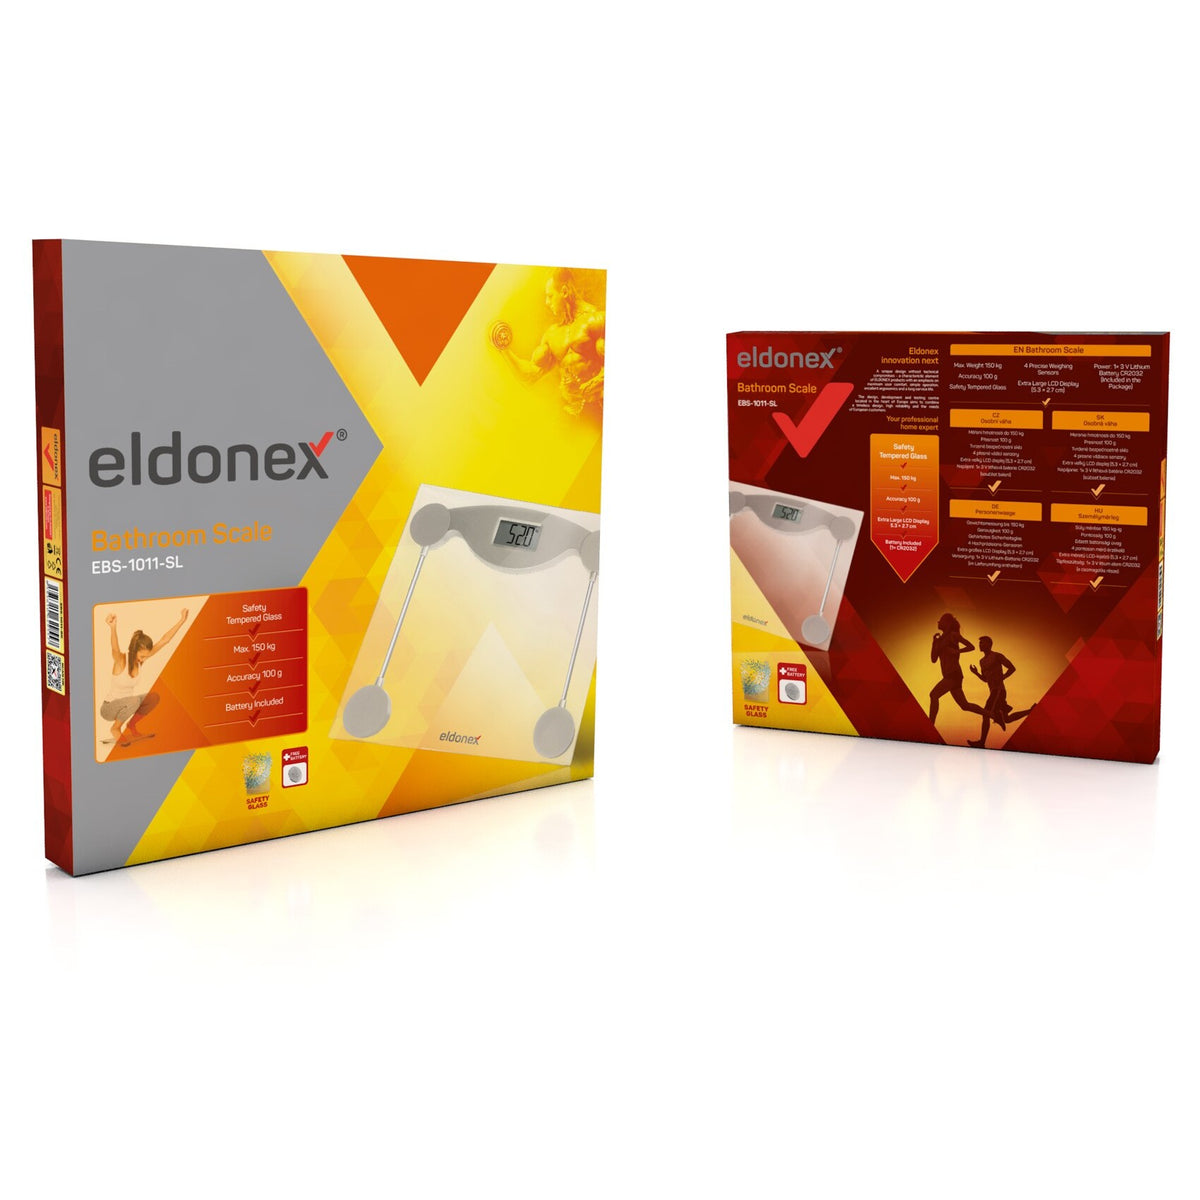 Osobní váha Eldonex BodyFit EBS-1011-SL, 150 kg